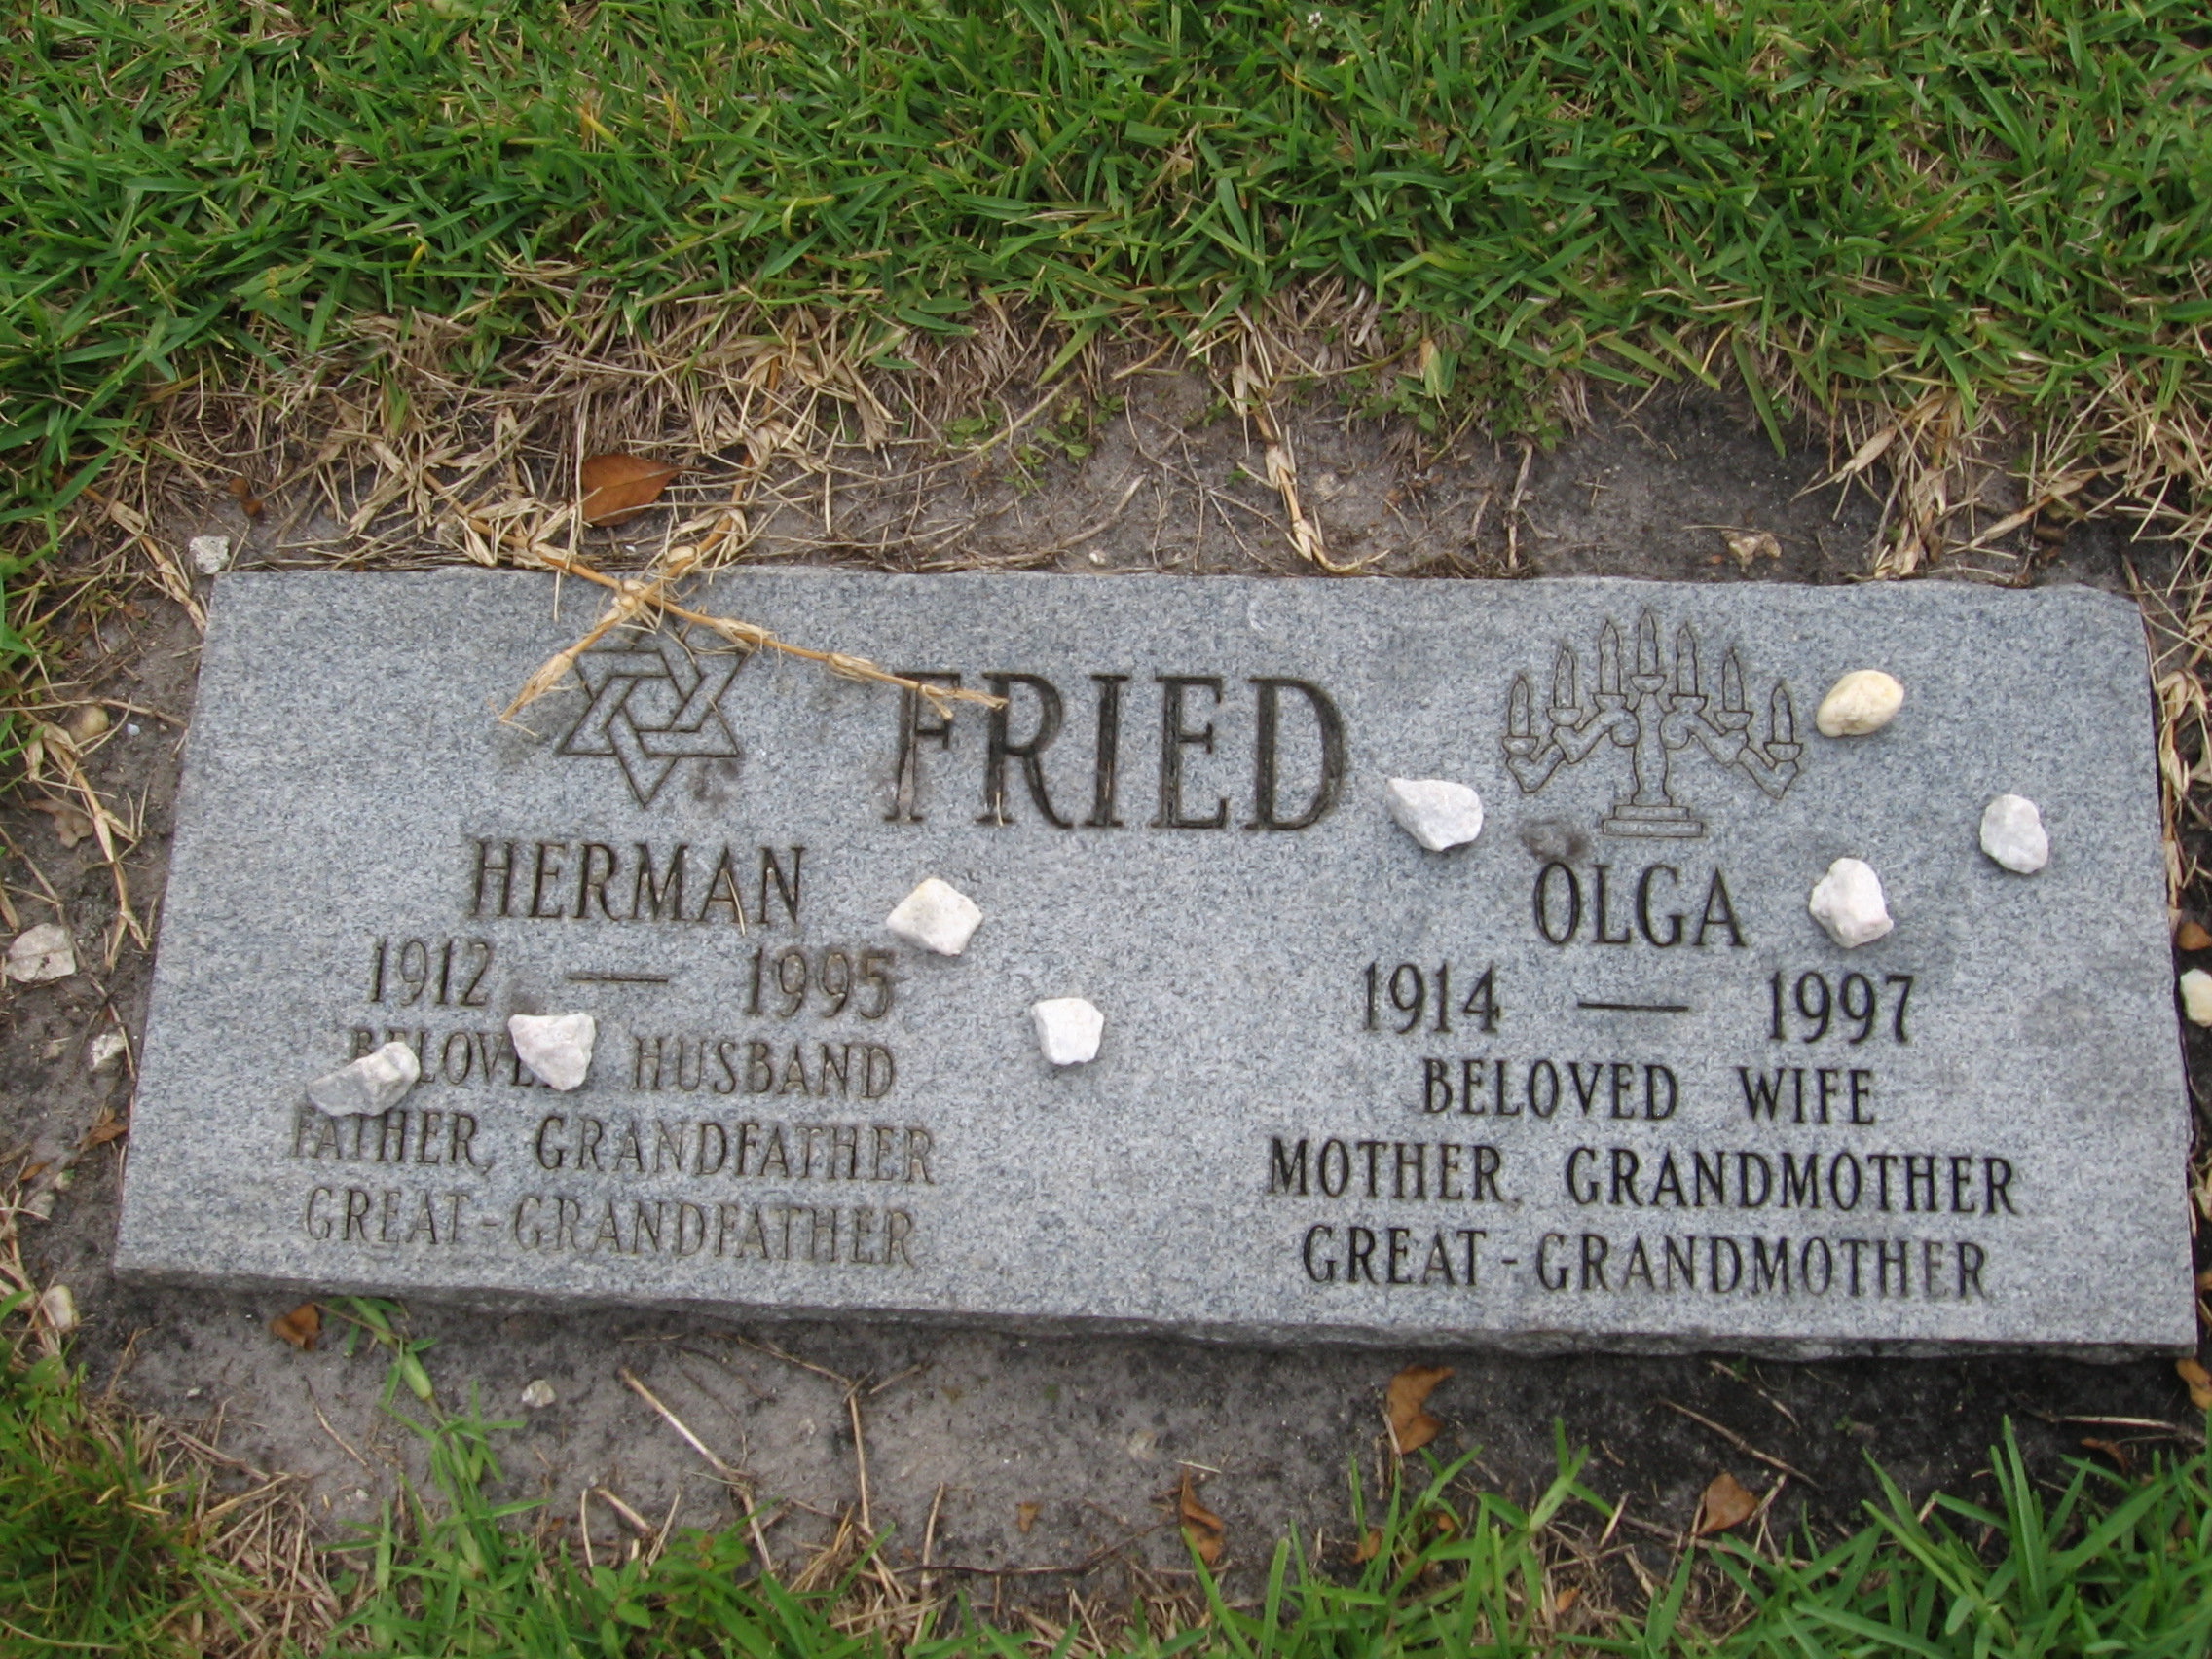 Herman Fried